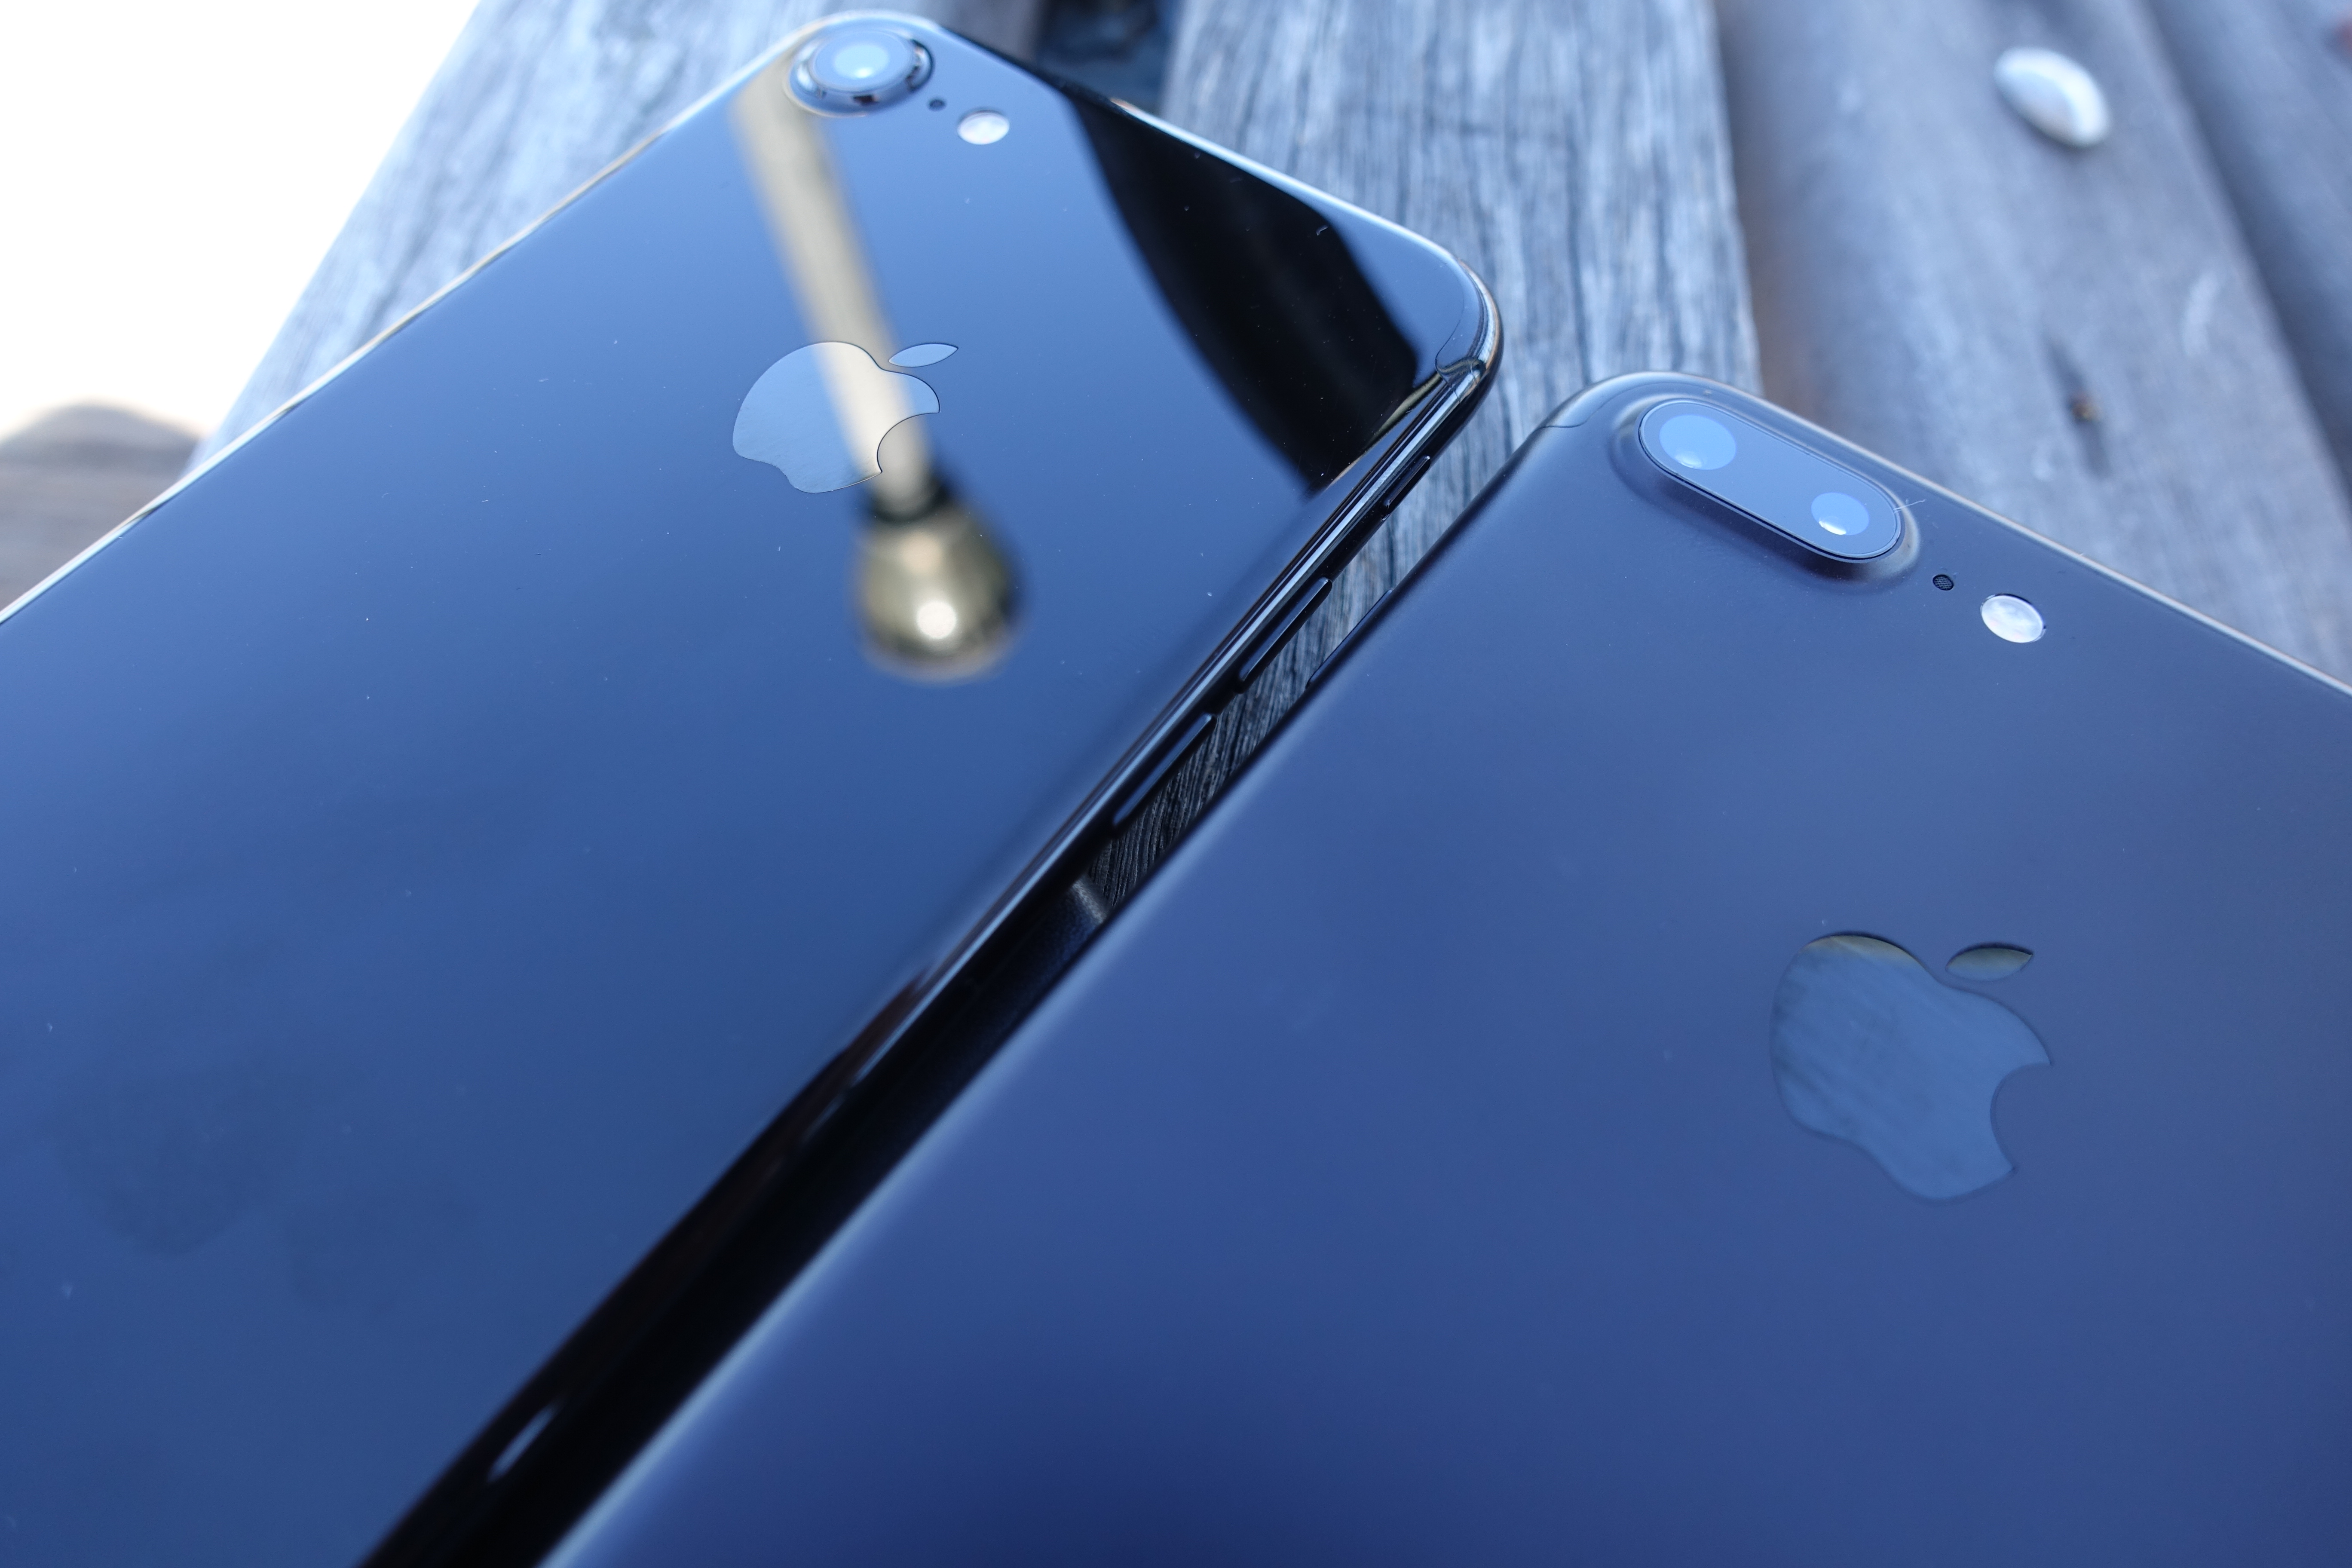 iPhone 7 Jet Black (til venstre) og iPhone 7 Plus svart er svært gode mobiltelefoner.